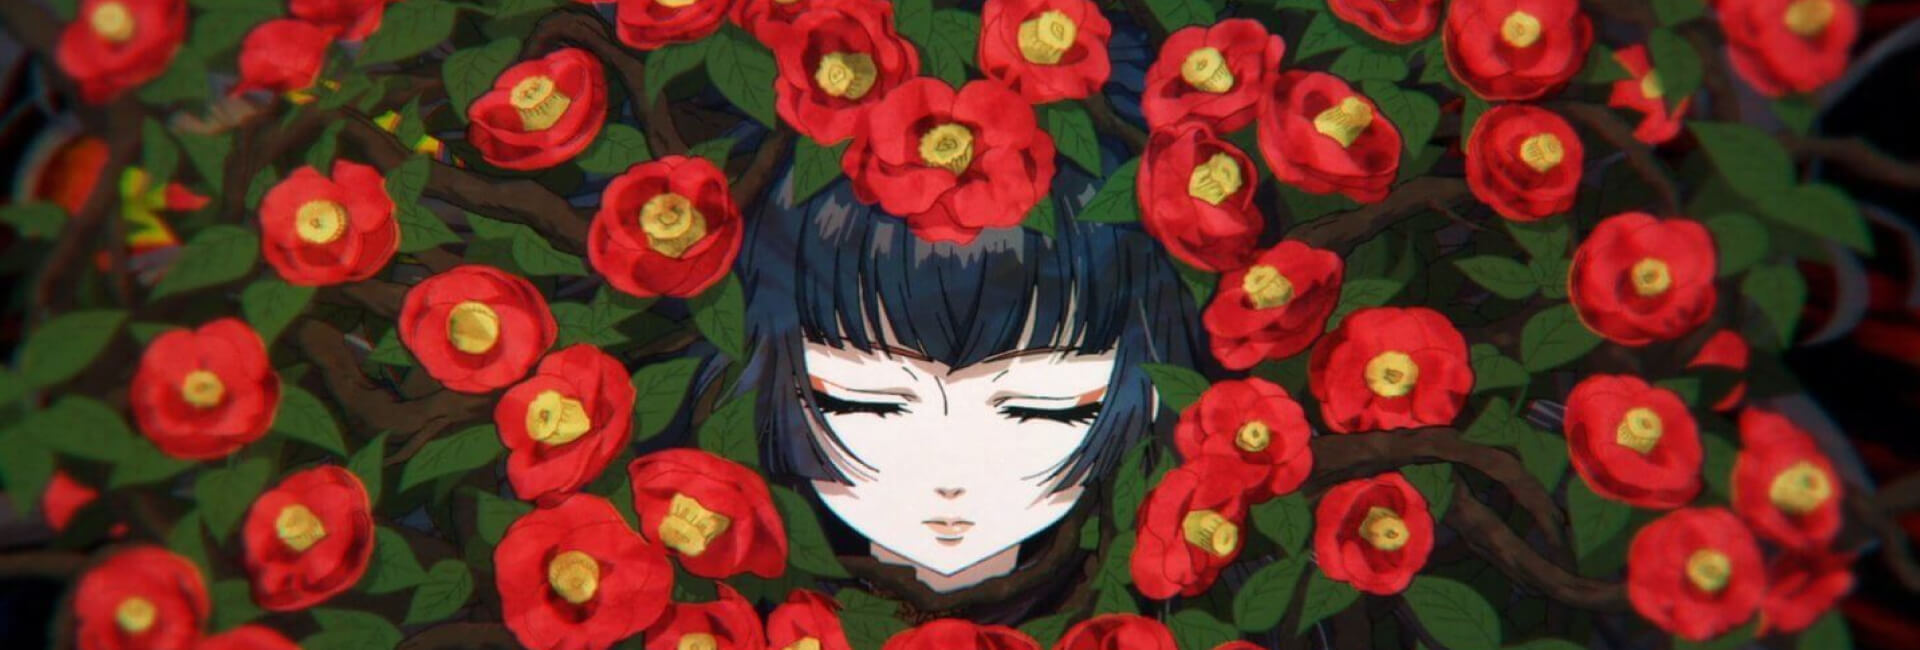 Capa da obra de Undead Girl Murder Face, onde aparece a protagonista feminina em volta de flores